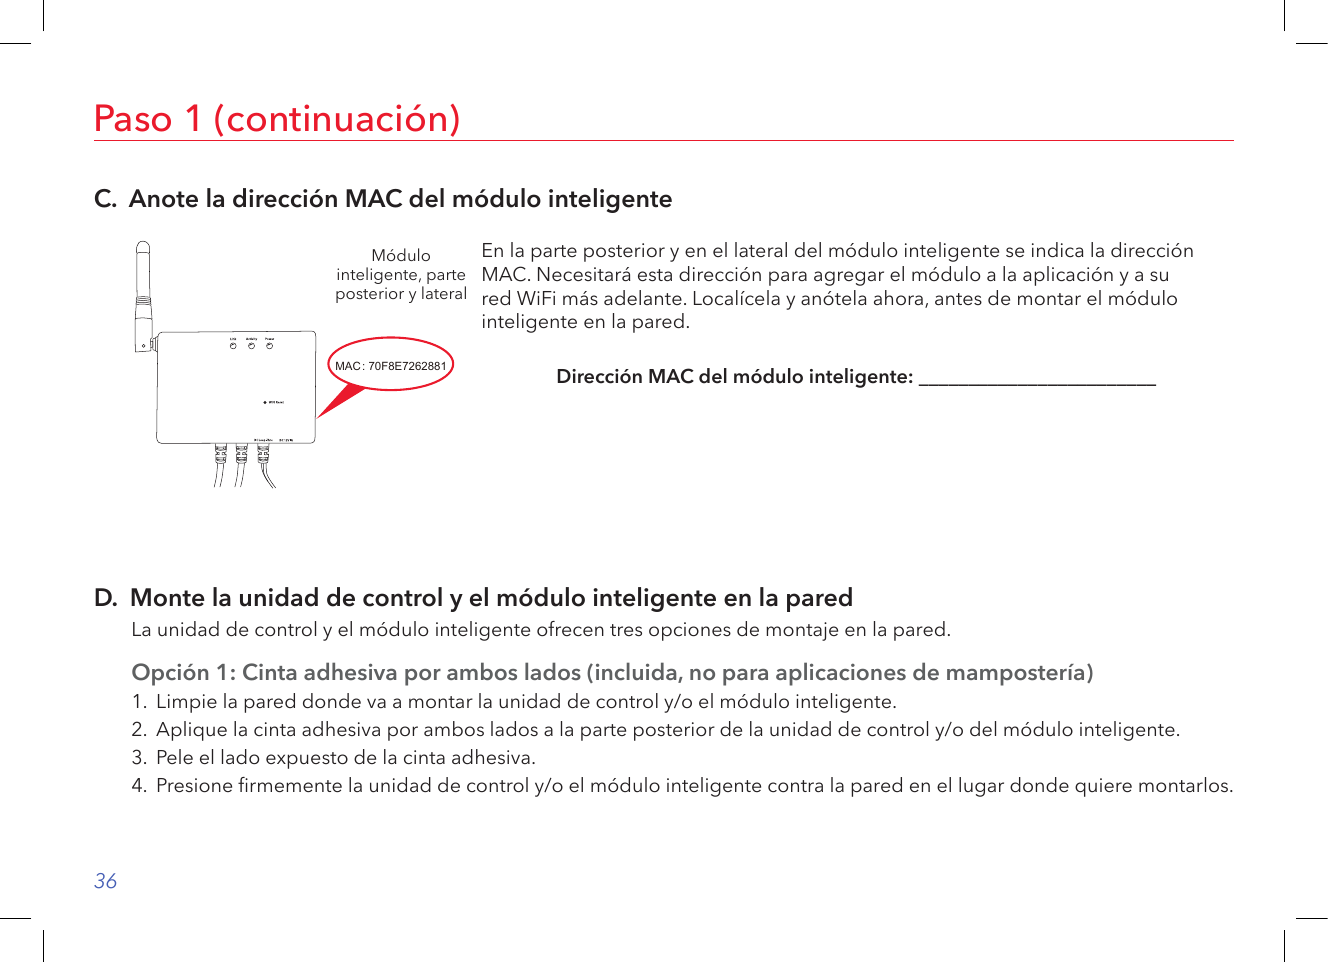 36Paso 1 (continuación)C.  Anote la dirección MAC del módulo inteligenteMódulo inteligente, parte posterior y lateralEn la parte posterior y en el lateral del módulo inteligente se indica la dirección MAC. Necesitará esta dirección para agregar el módulo a la aplicación y a su  red WiFi más adelante. Localícela y anótela ahora, antes de montar el módulo inteligente en la pared. Dirección MAC del módulo inteligente: ________________________D.  Monte la unidad de control y el módulo inteligente en la paredLa unidad de control y el módulo inteligente ofrecen tres opciones de montaje en la pared.Opción 1: Cinta adhesiva por ambos lados (incluida, no para aplicaciones de mampostería)1.  Limpie la pared donde va a montar la unidad de control y/o el módulo inteligente.2.  Aplique la cinta adhesiva por ambos lados a la parte posterior de la unidad de control y/o del módulo inteligente.3.  Pele el lado expuesto de la cinta adhesiva.4.  Presione rmemente la unidad de control y/o el módulo inteligente contra la pared en el lugar donde quiere montarlos.Rating LABEL2018/03/27MODI-IOT67630551460G A0.1YangZhiQiang条码读码为: 70F8E7262881 此号码为16进制,每张标签之间需跳一码,即第一张号码为70F8E7262881,则第二 张号码为70F8E7262883,.....此次流水号为 此次流水号为GMA252V13F0001~GMA252V13F010070F8E7262881~70F8E7262947,共100张.MAC NUMBERMACSN: GMA252V13F0001: 70F8E7262881SMART MODULEMADE IN CHINACAN ICES-3(B)/NMB-3(B)FCC ID: VIXMOD1IC: 21578-MOD1MODEL: MOD1INPUT: 12V     1A30.0mm36.0mm条码读码为: GMA252V13F0001Serial numberF: GMA25:Model code(MOD1-IOT)Assigned by AECV: Manufactured year(V=2018,skip I,O,S,Z)13: Manufactured week2TO: 采购2018.03.27